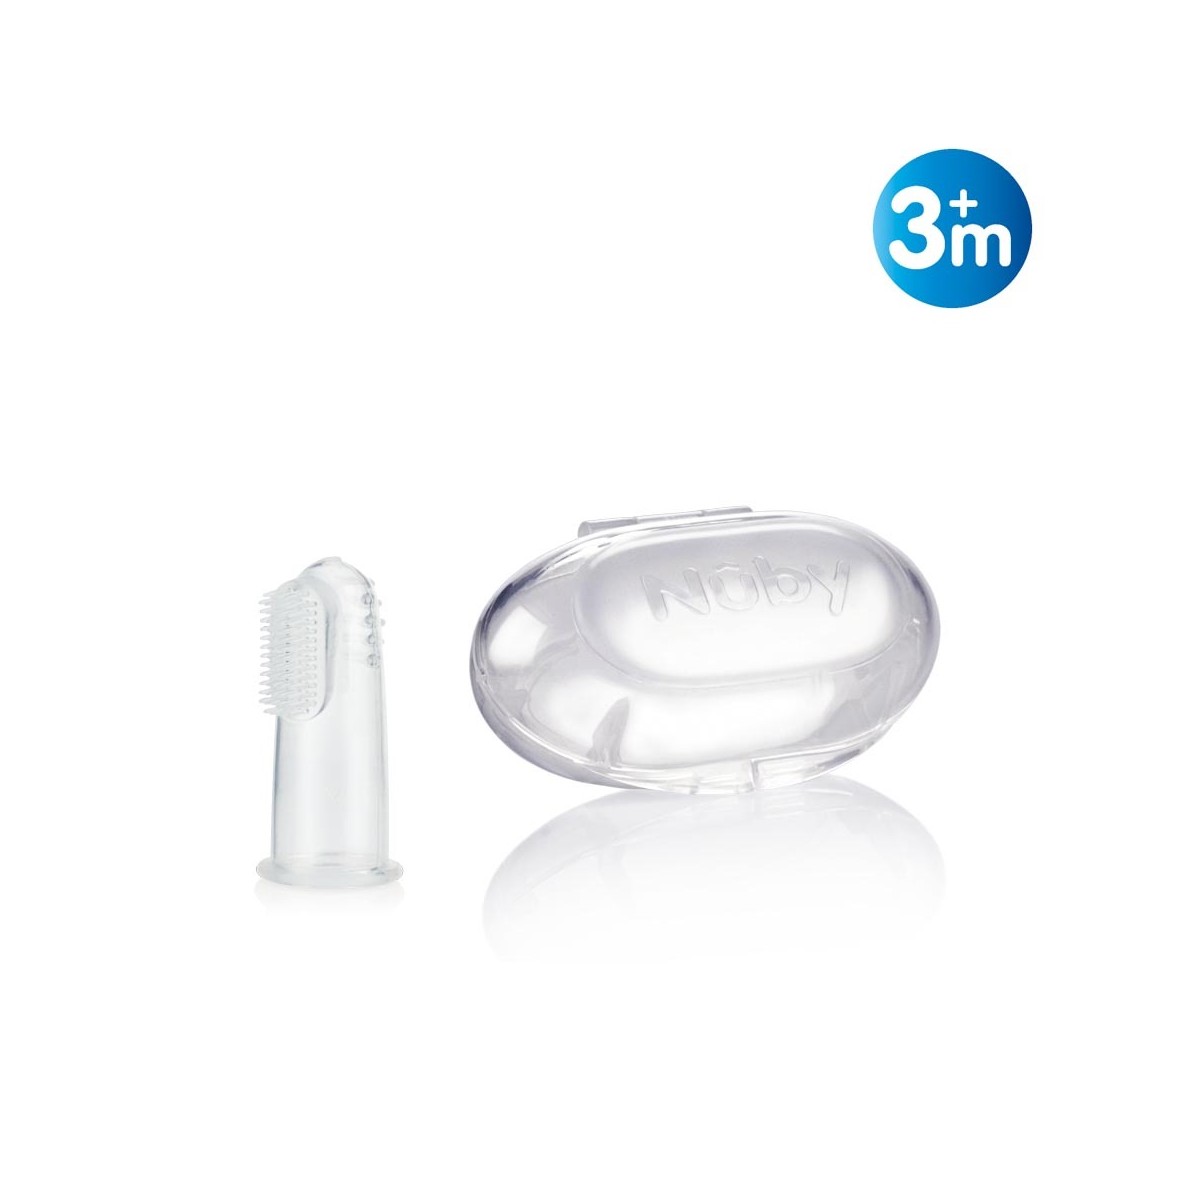 Vinger tandenborstel met opslagdoos gemaakt van extra zachte siliconen en heeft drie verschillende oppervlakken.